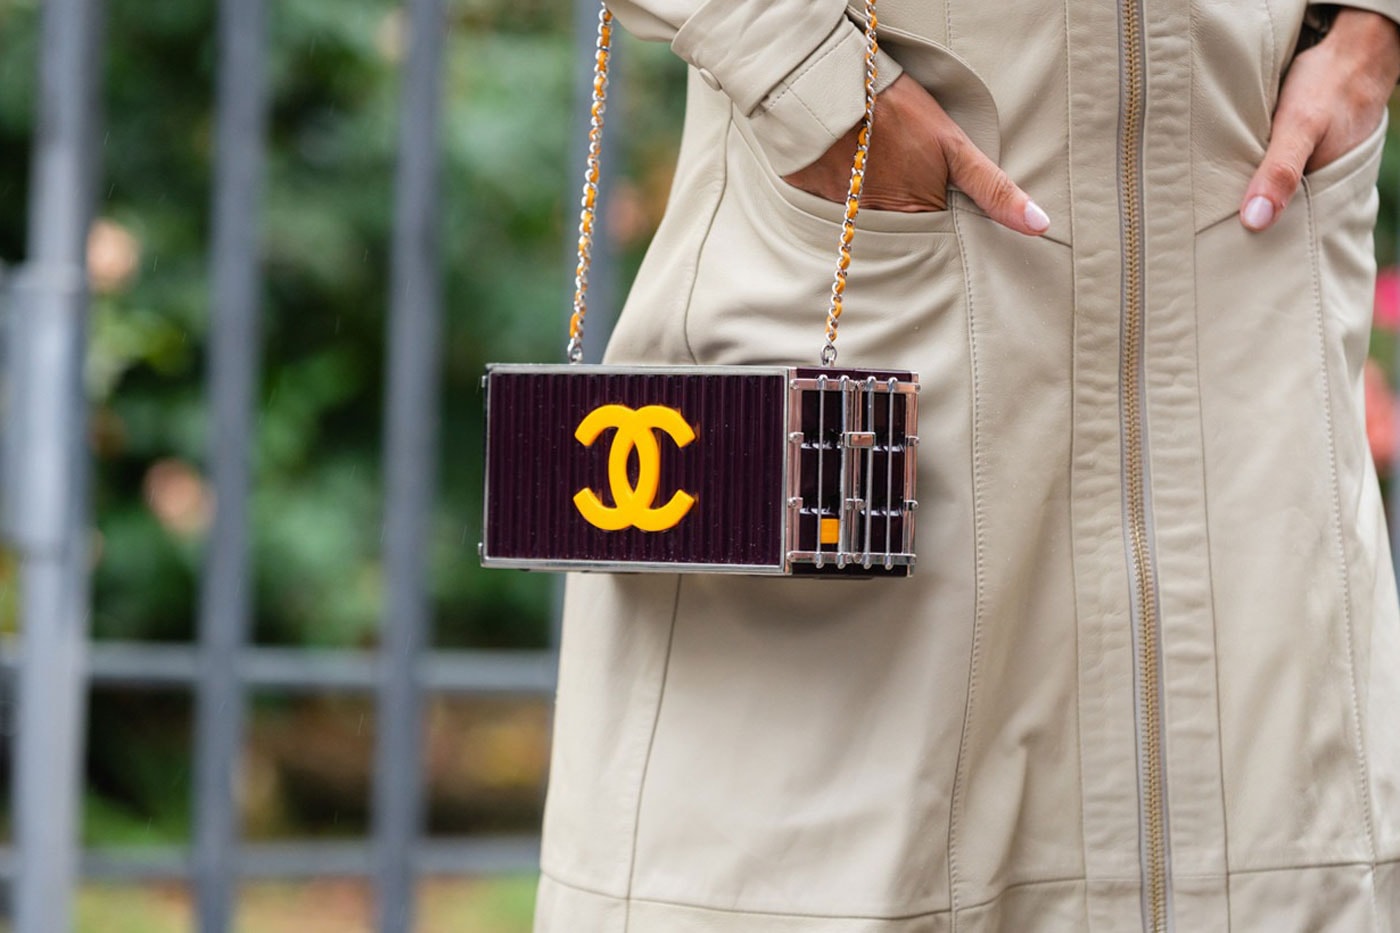 シャネルがホリデーシーズンを目前に人気ハンドバッグの一部を値上げ Chanel Has Increased Handbag Prices in Preparation for Christmas holiday shopping season french luxury lvmh louis vuitton business of fashion kering reuters luxury fashion